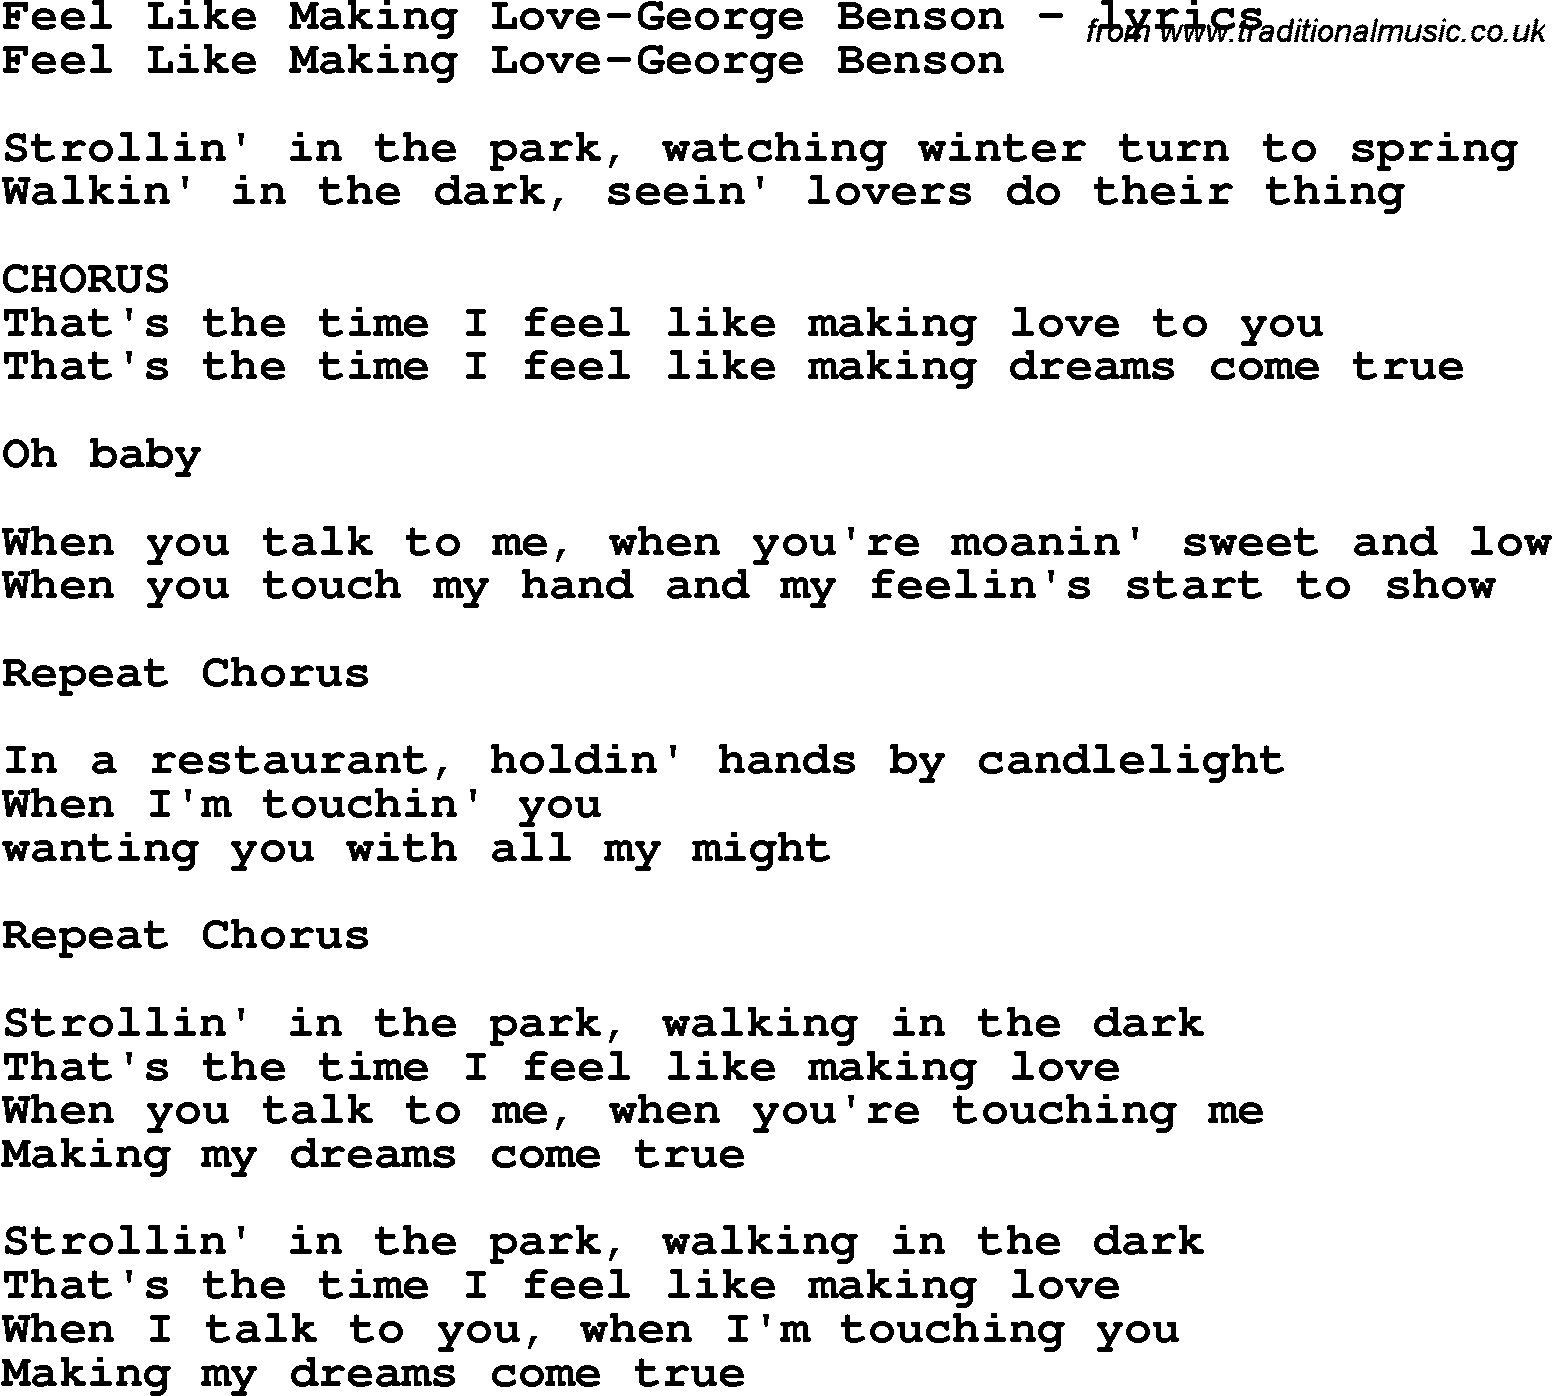 Love Song Lyrics for: Feel Like Making Love-George Benson